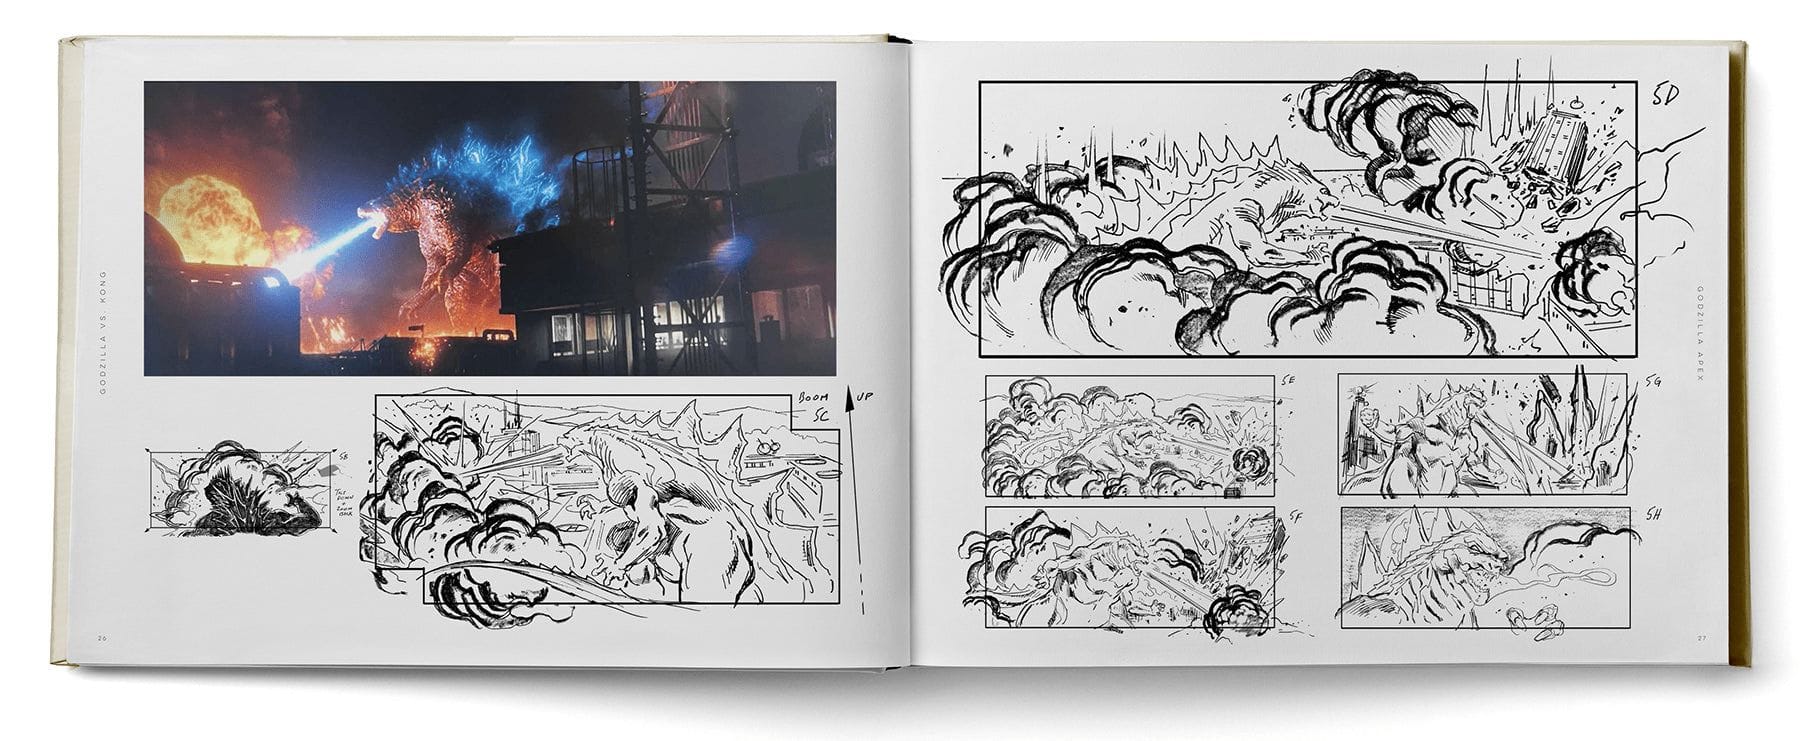 Godzilla x Kong Director Dives Into the Titan&#8217;s Darkest Foe